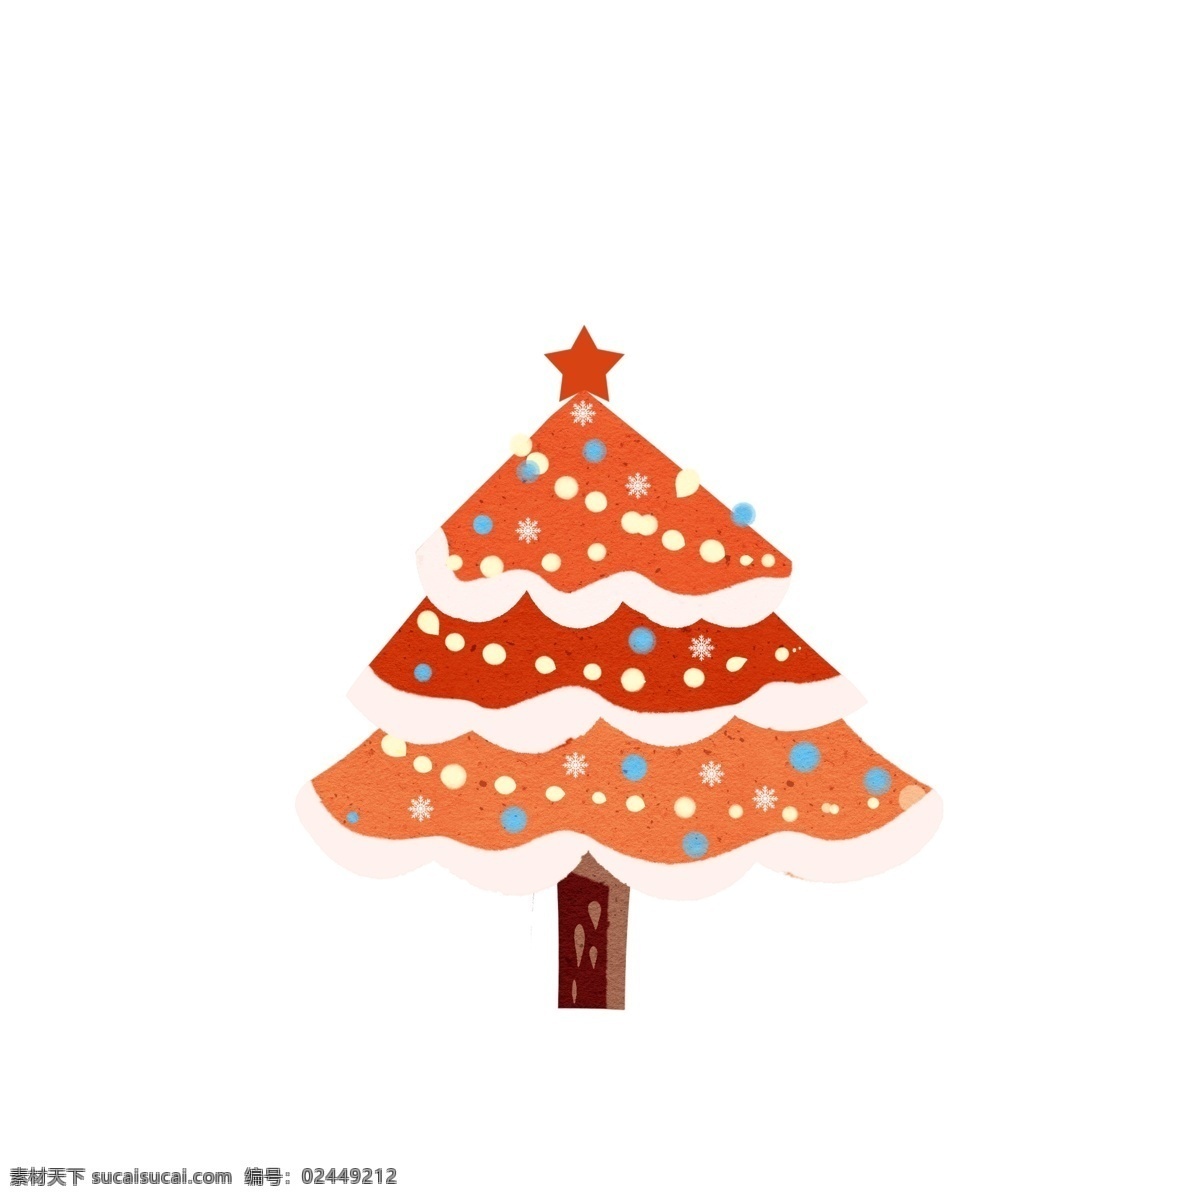 卡通 圣诞树 装饰 节日 圣诞节 既节日